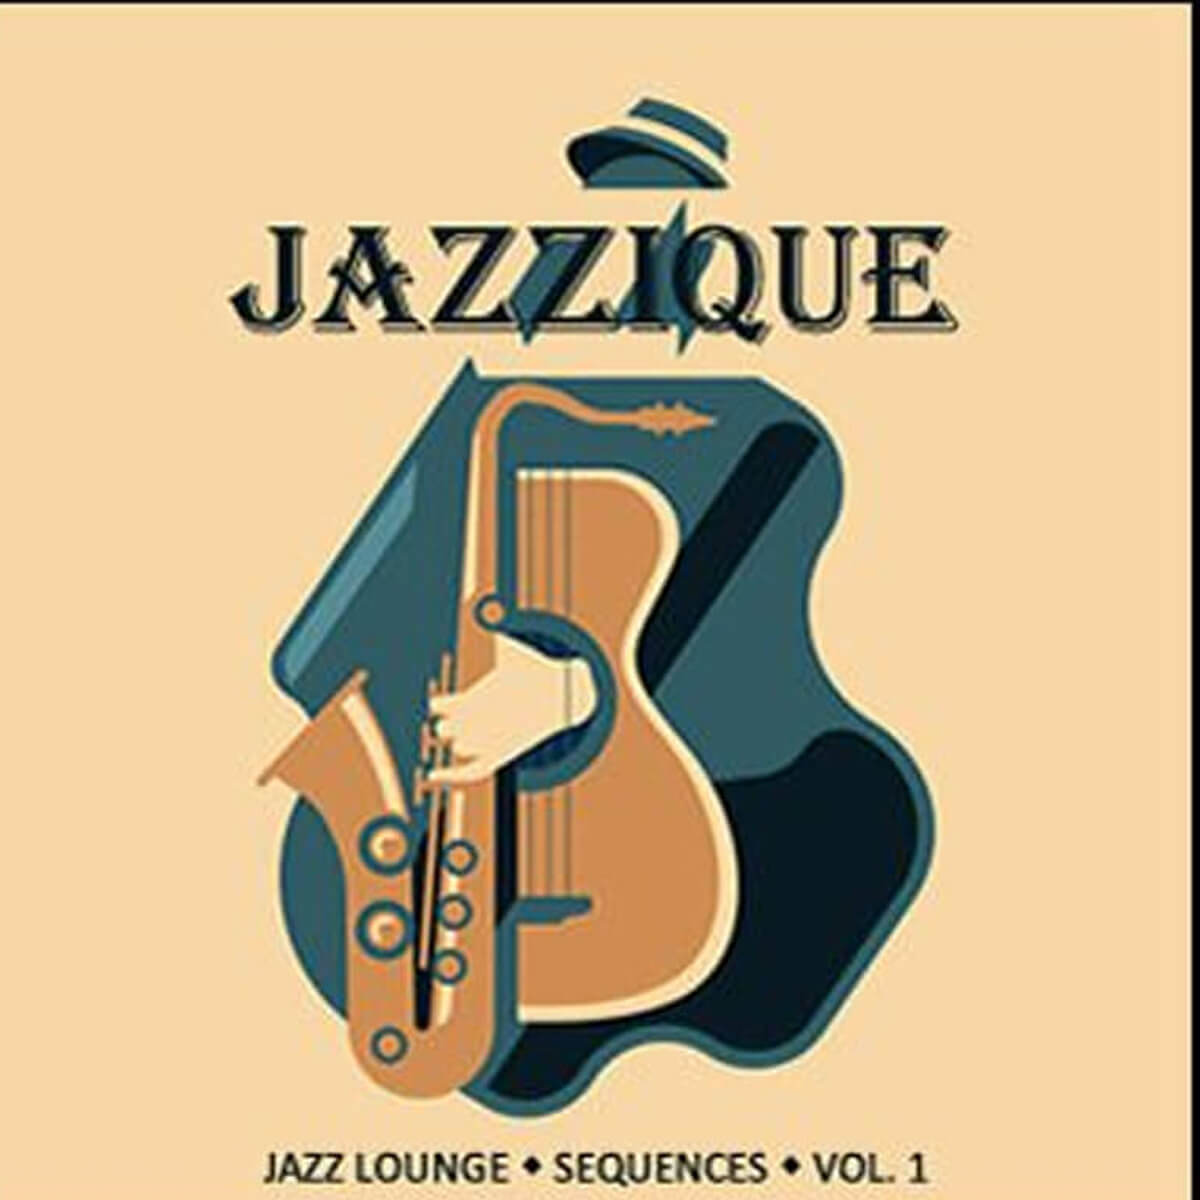 Jazzique Sequences Vol. 1